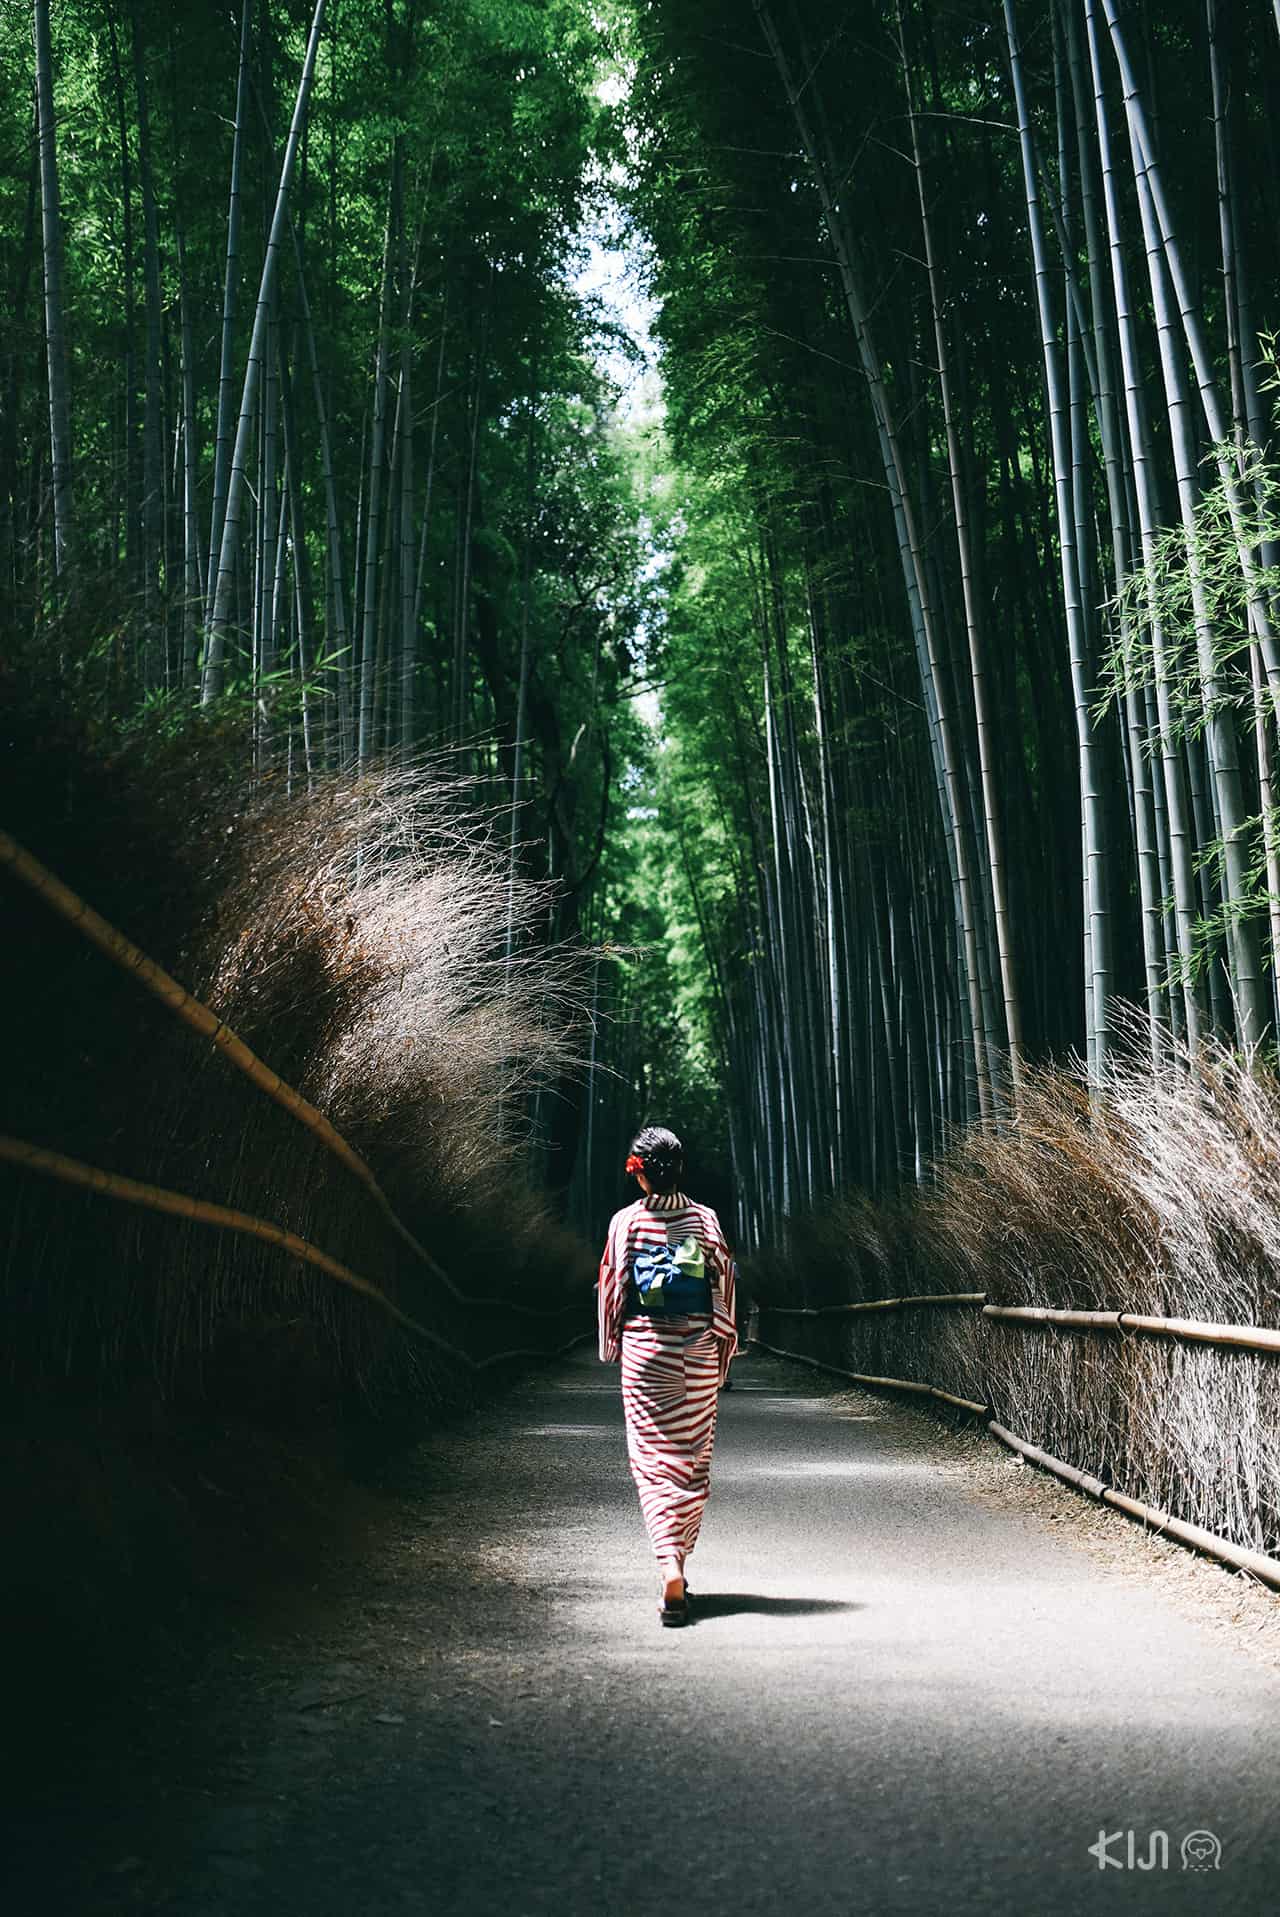 ย่านอาราชิยาม่า (Arashiyama) ในเกียวโต